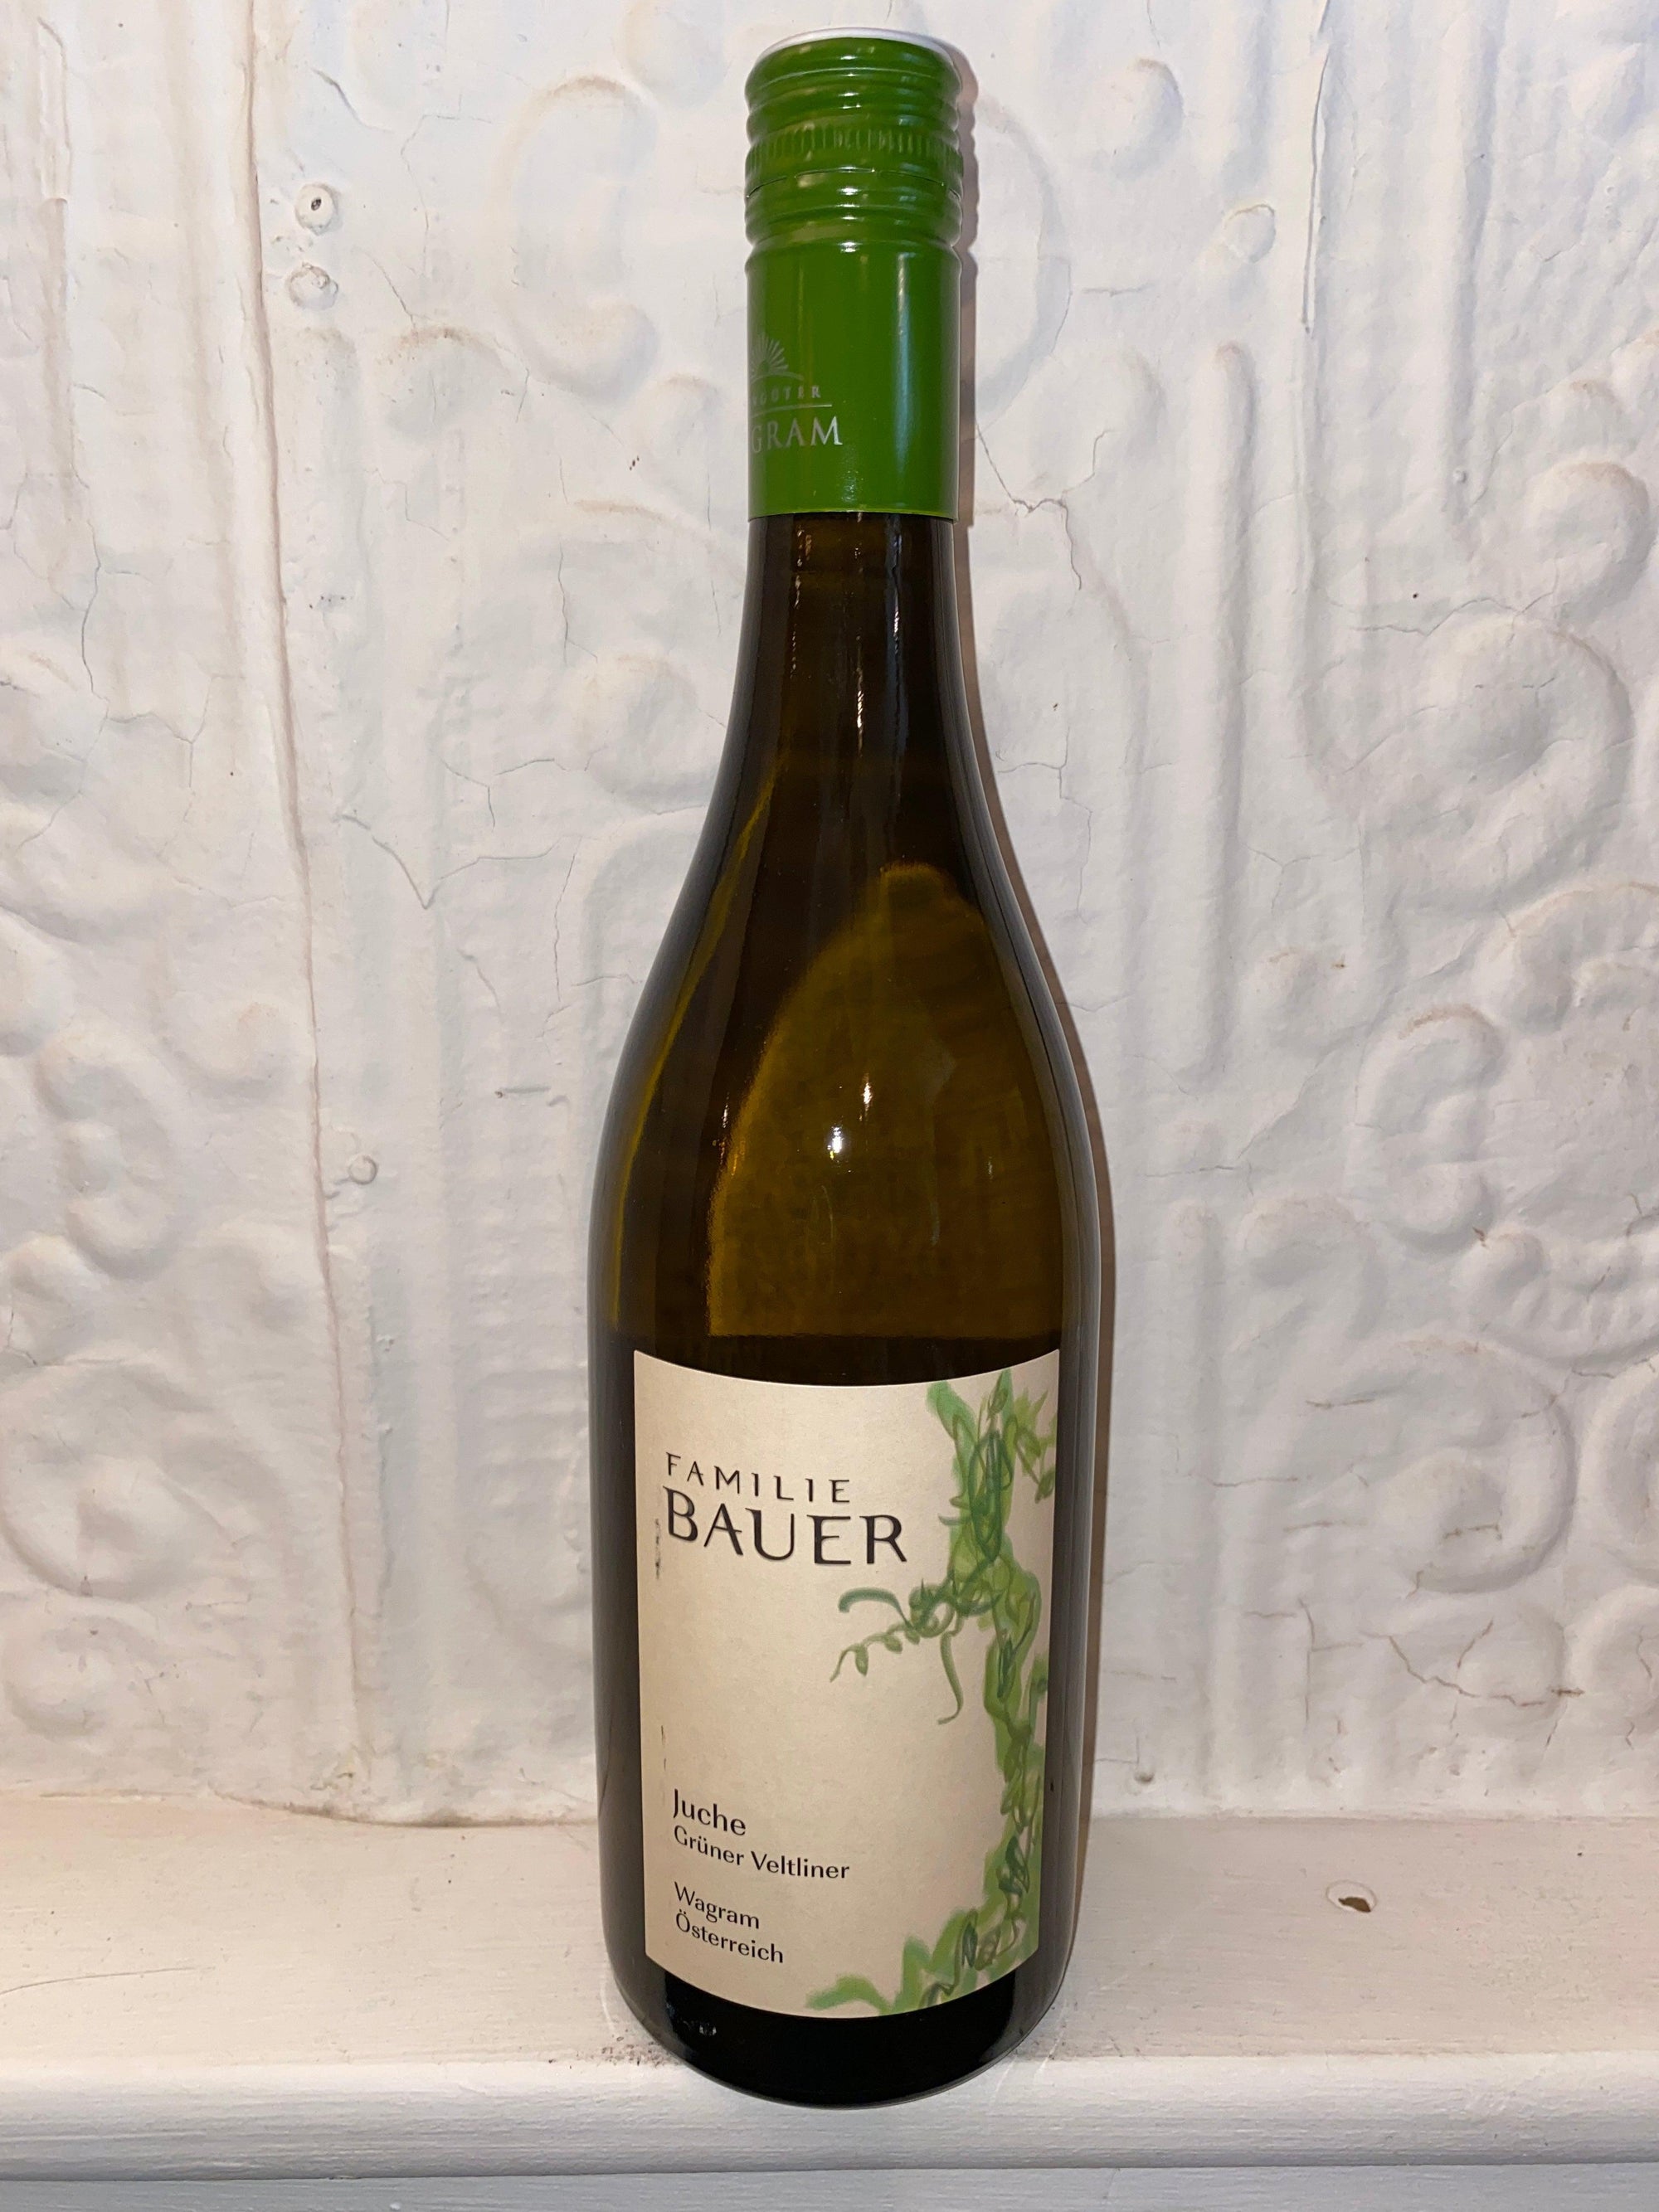 Juche Gruner Vetliner, Familie Bauer 2021 (Niederösterreich, Austria)-Wine-Bibber & Bell